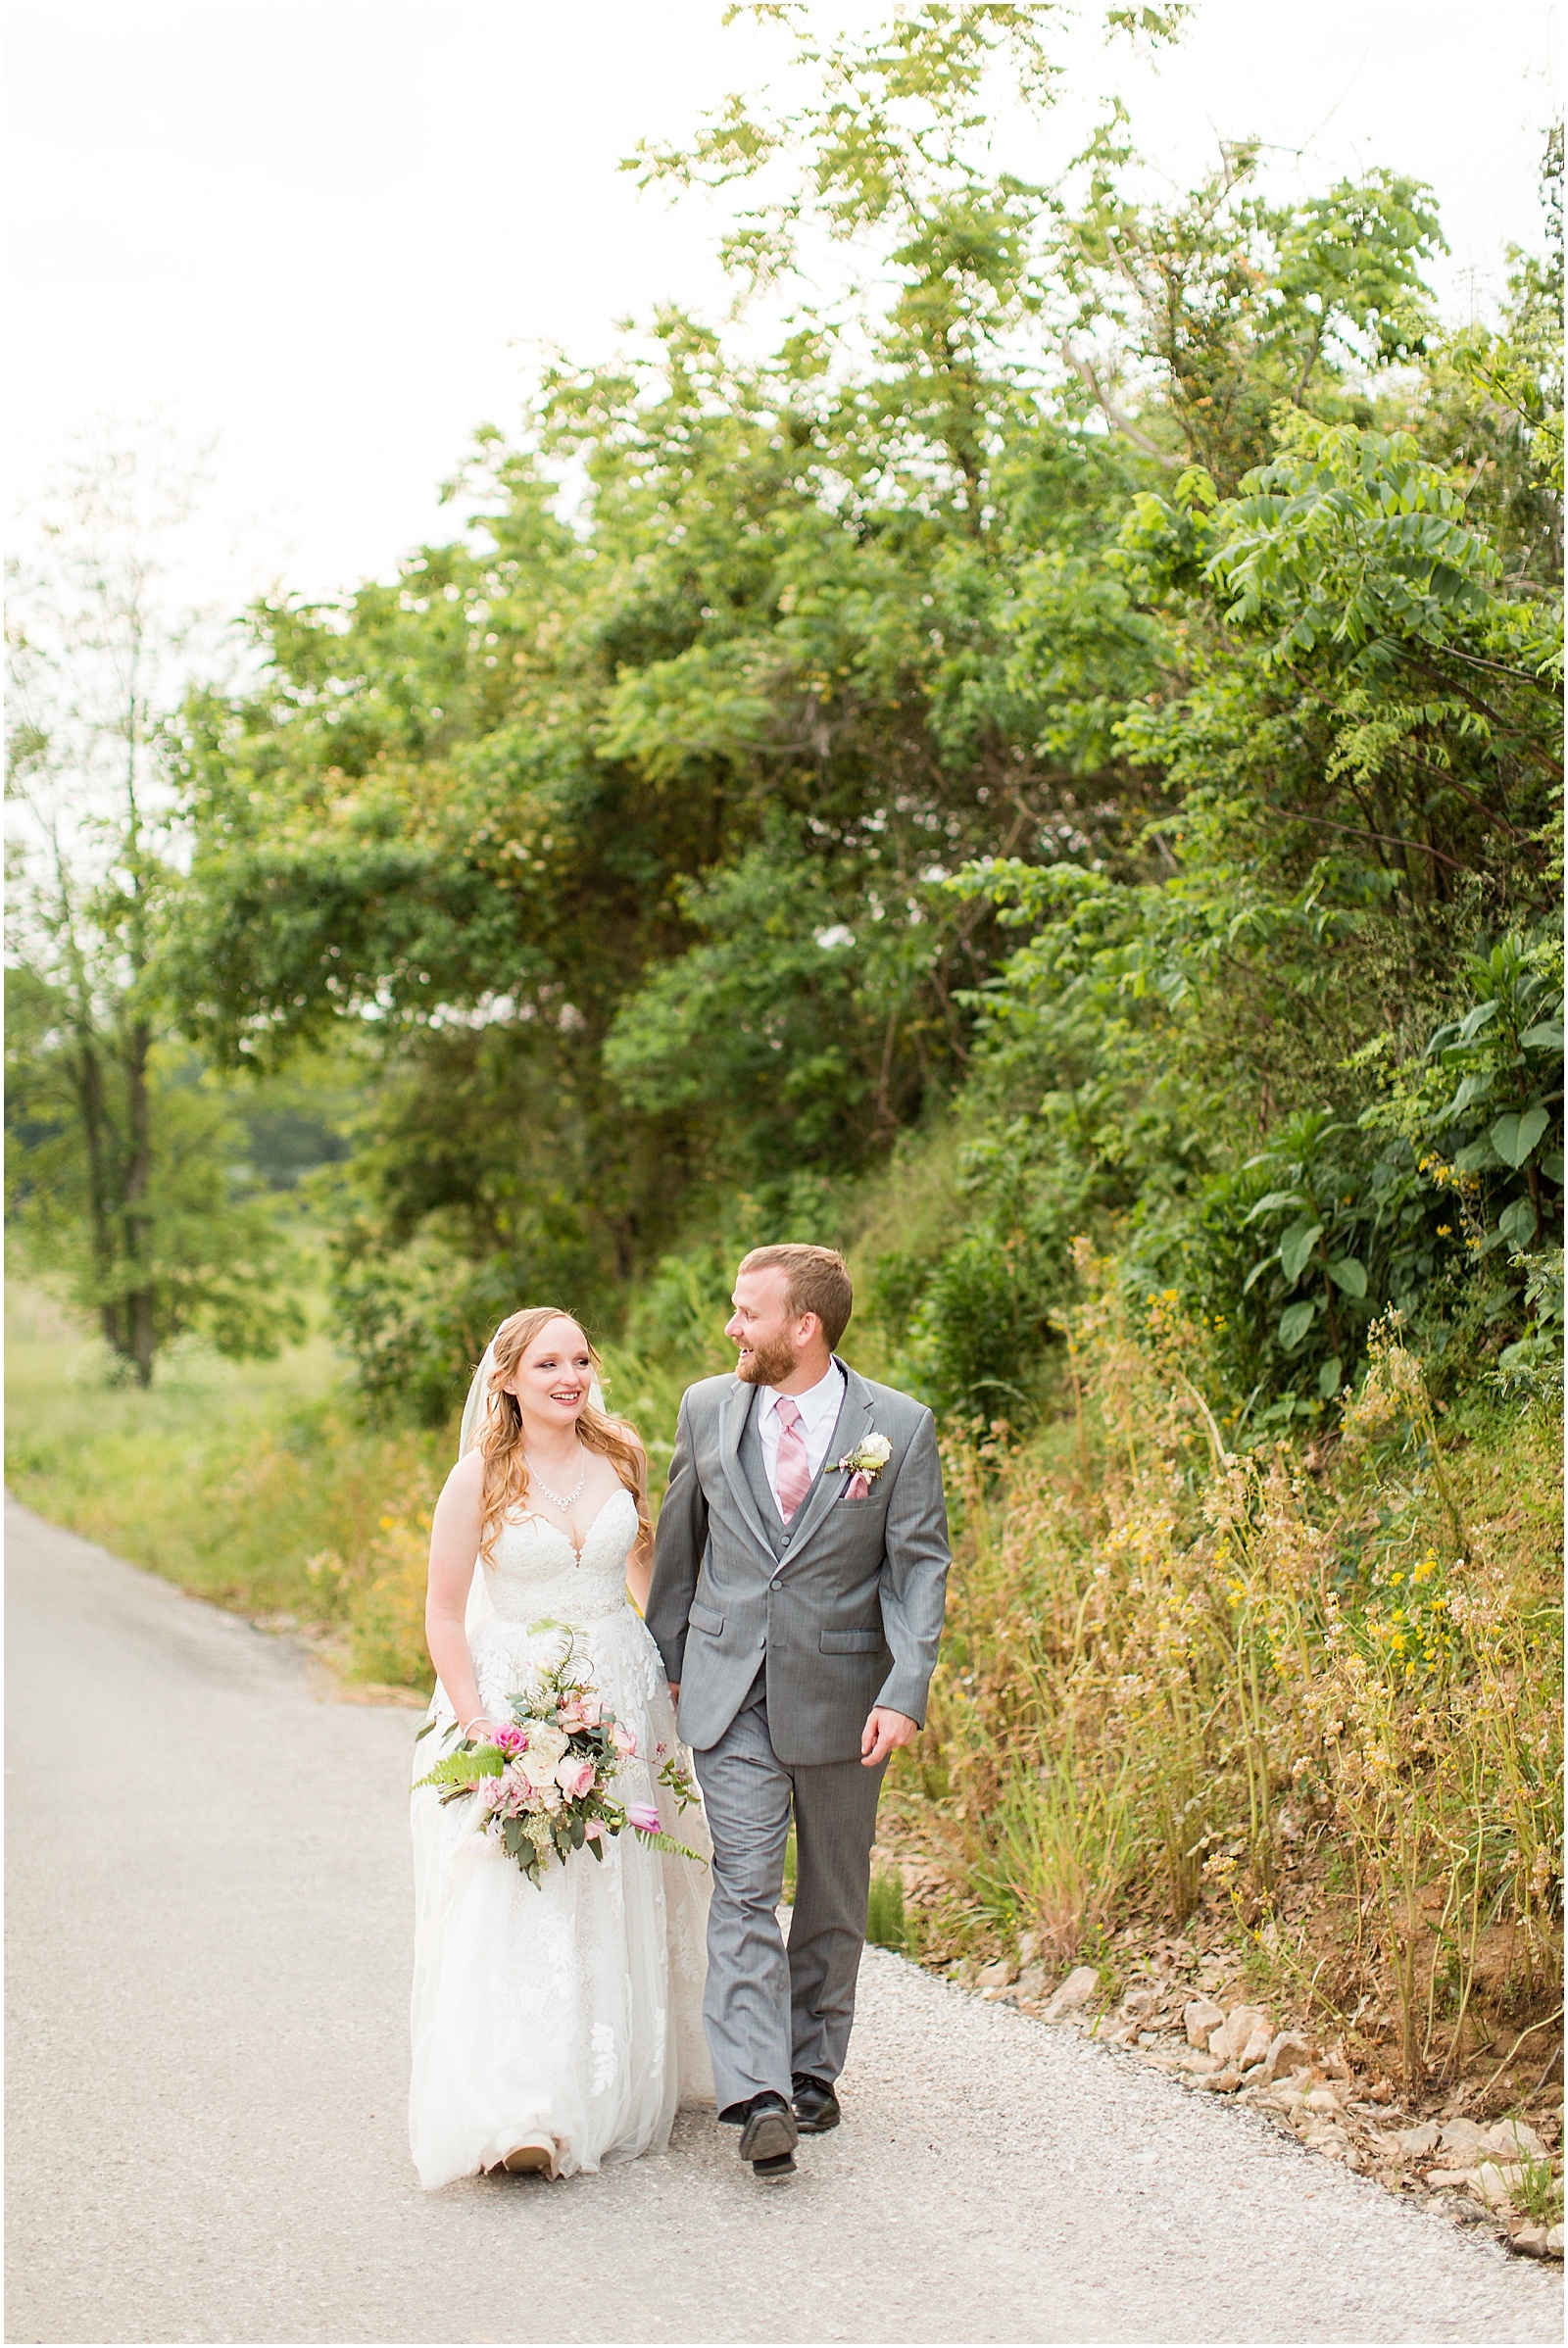 Sierra and Eddie | Wedding BlogBret and Brandie Blog | @bretandbrandie-0114.jpg